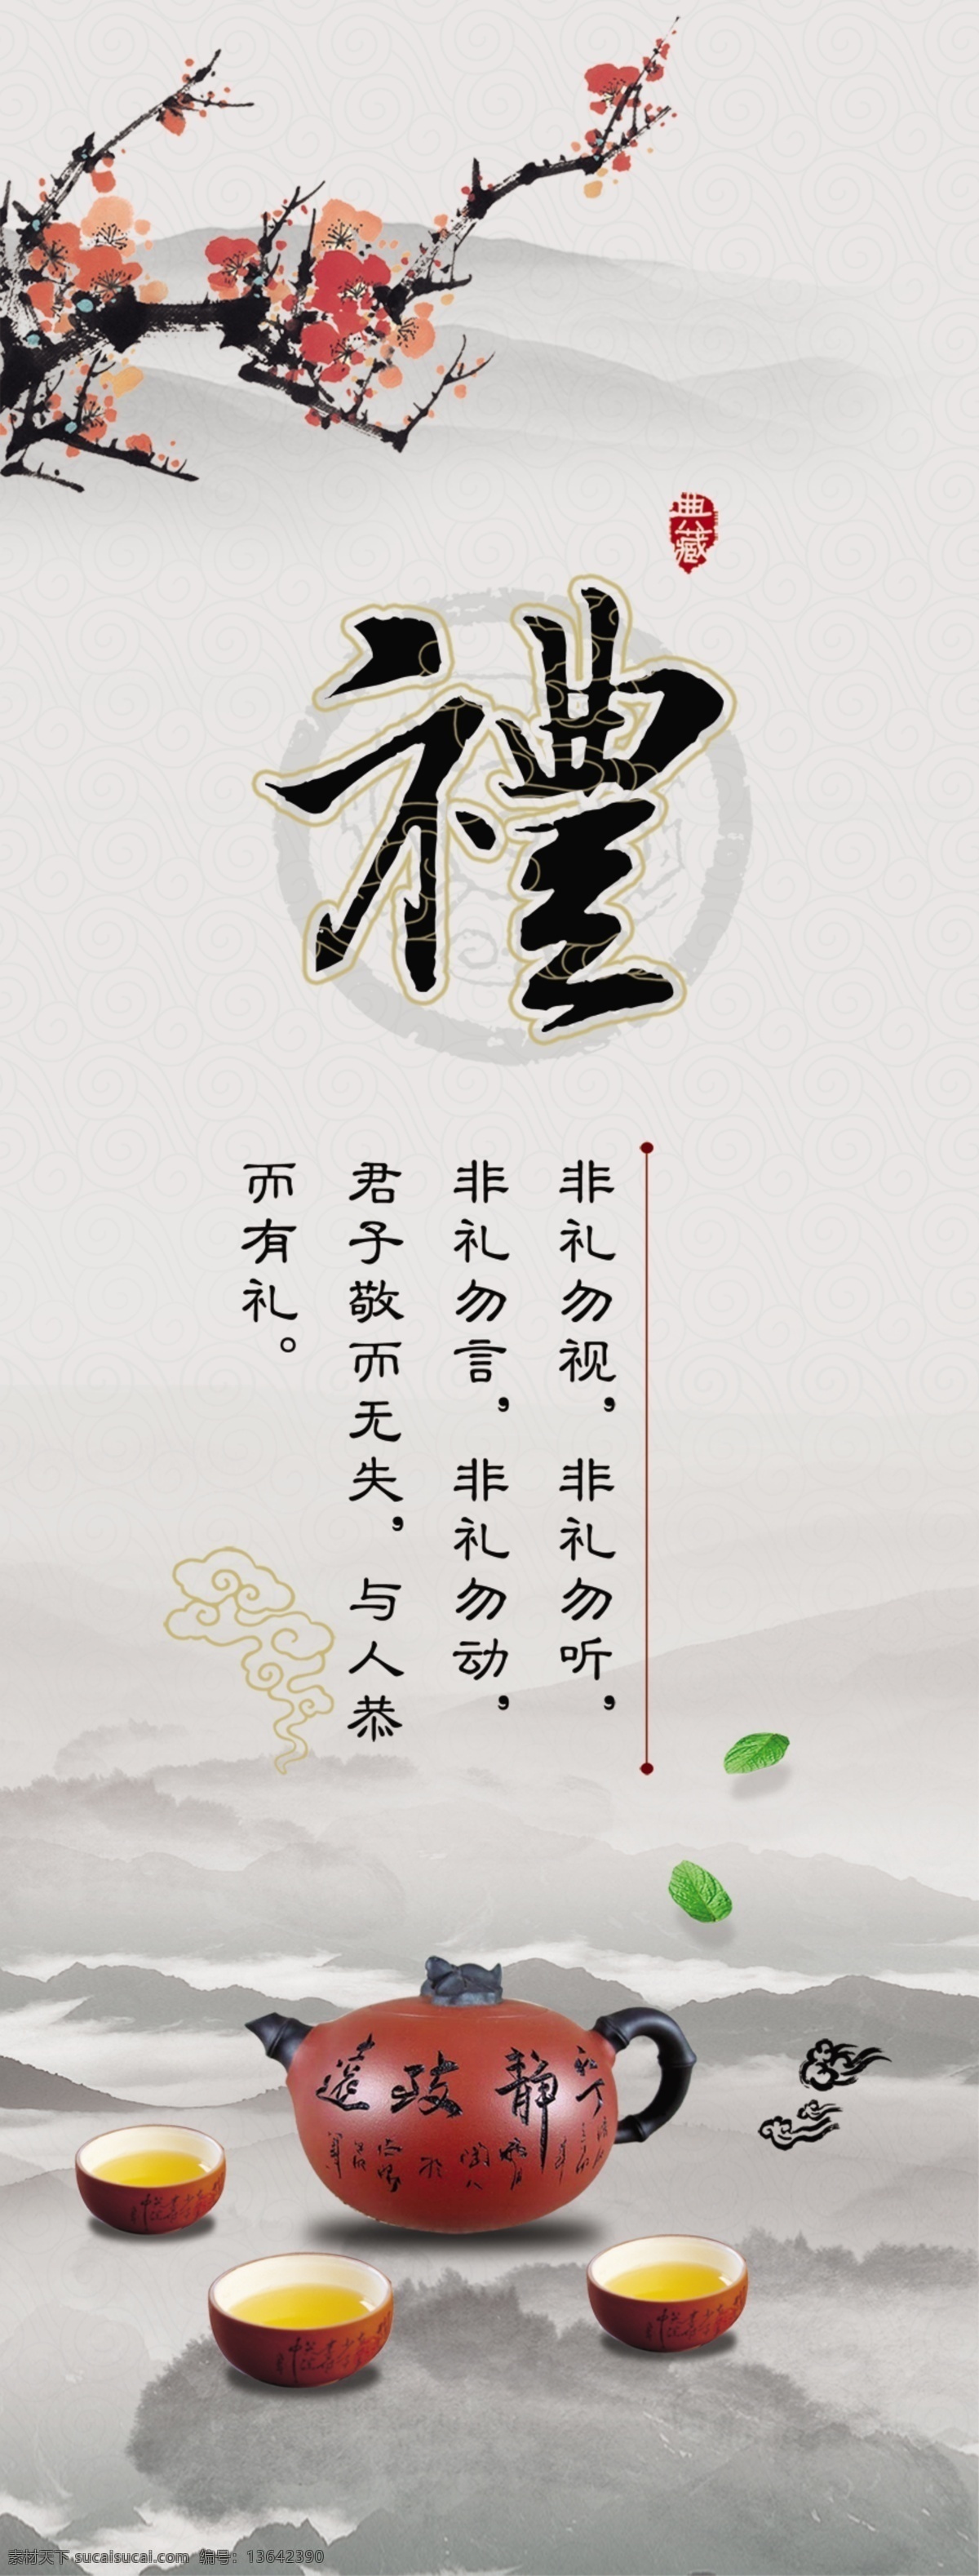 道德文化 道德 文化 礼仪 中国 传统 水墨 礼让 国学 展板模板